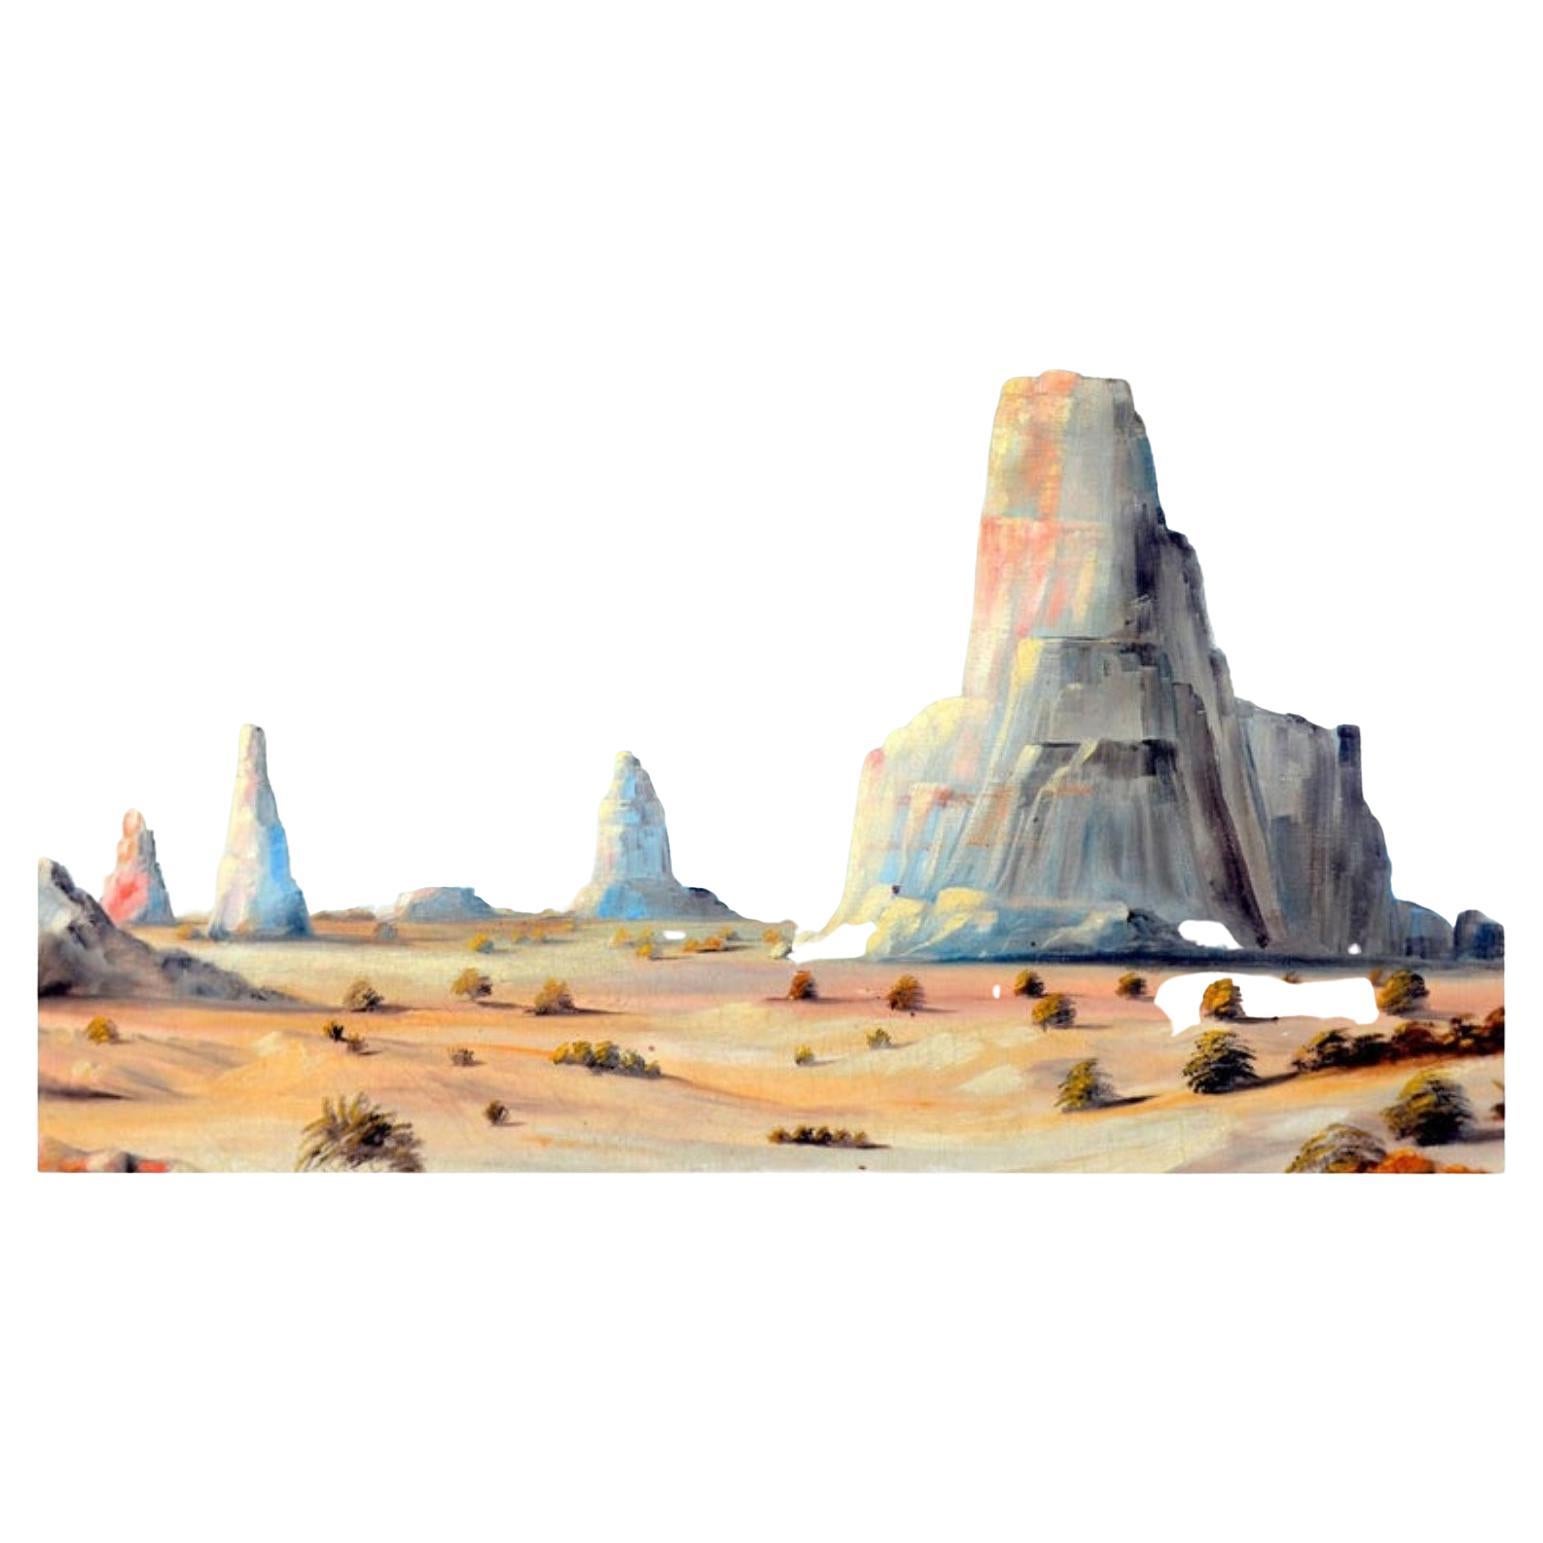 Monument Valley Ölgemälde auf Leinwand, um 1930